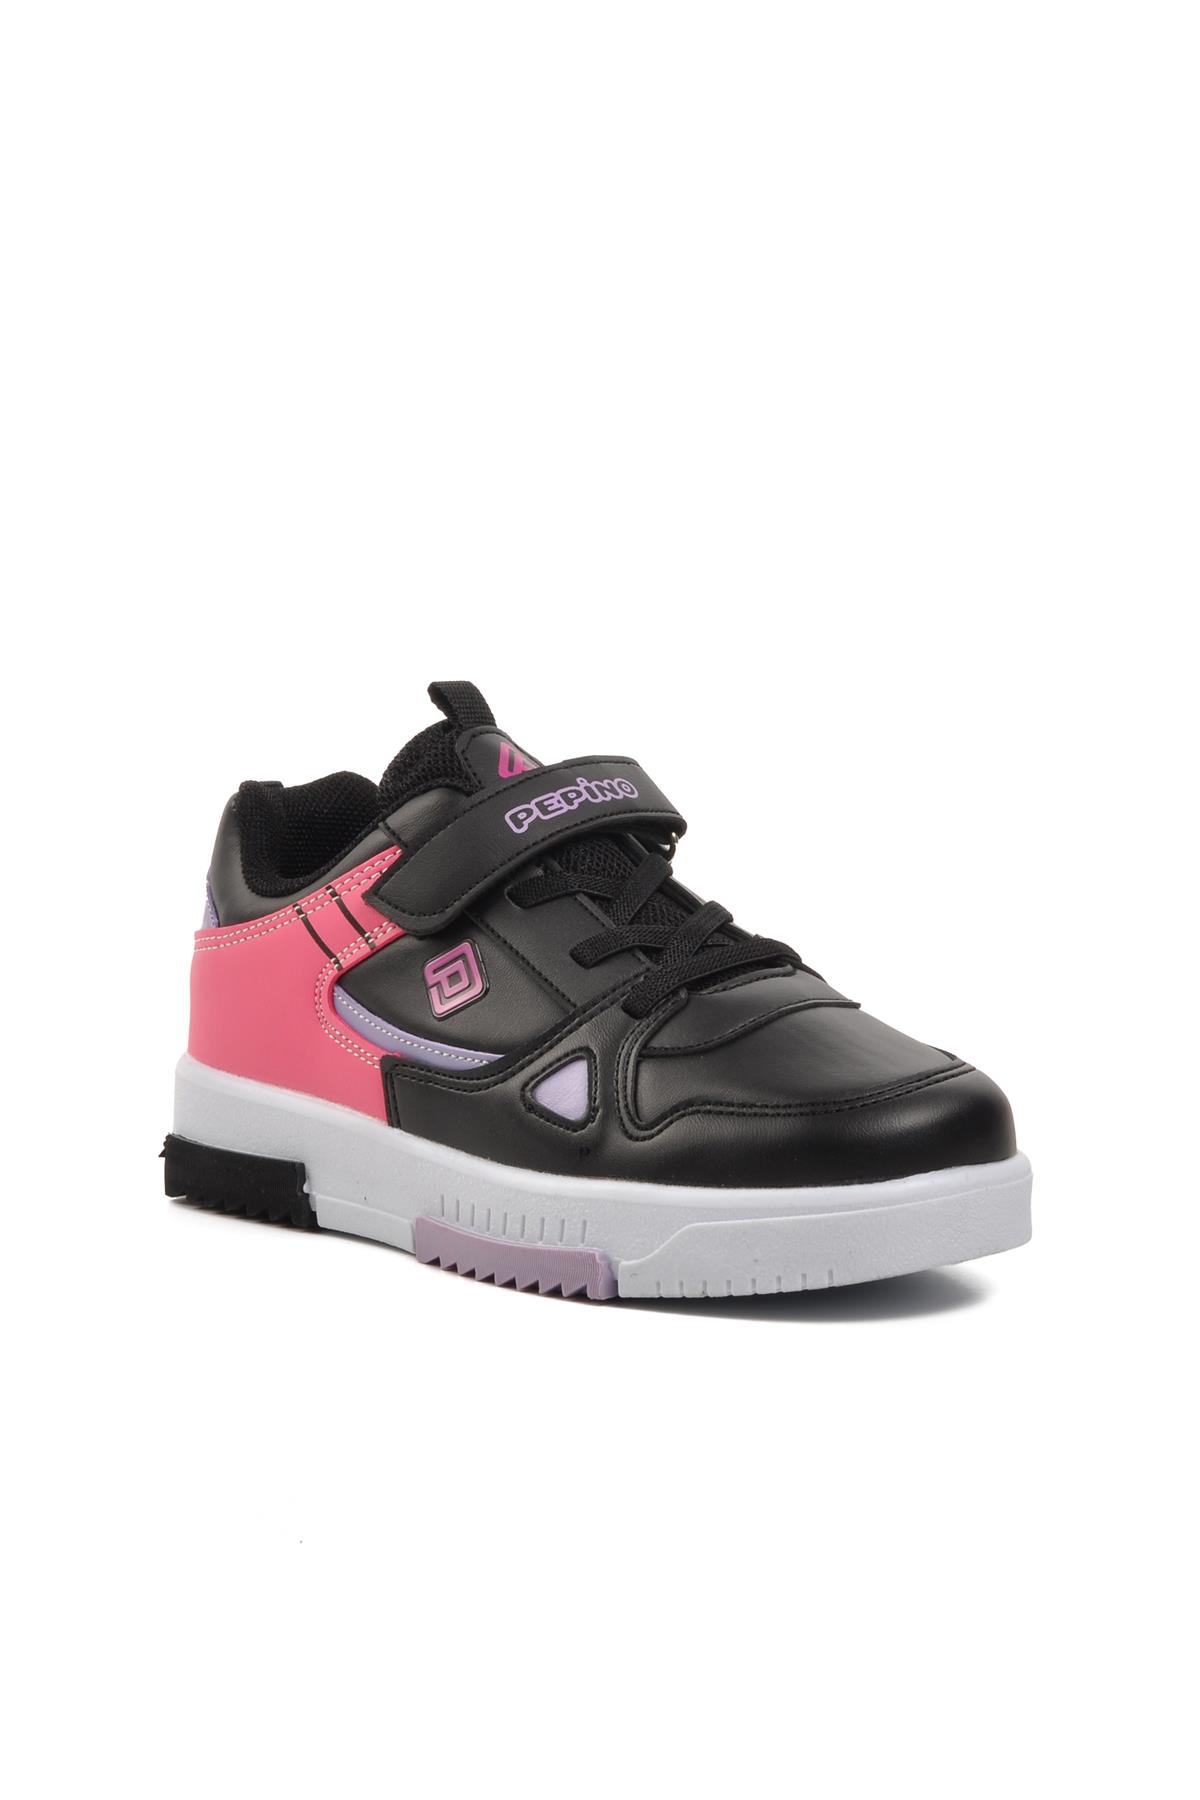 Pepino 1564-F Siyah-Fuşya Cırtlı Çocuk Sneaker Pepino Çocuk Spor Ayakkabı